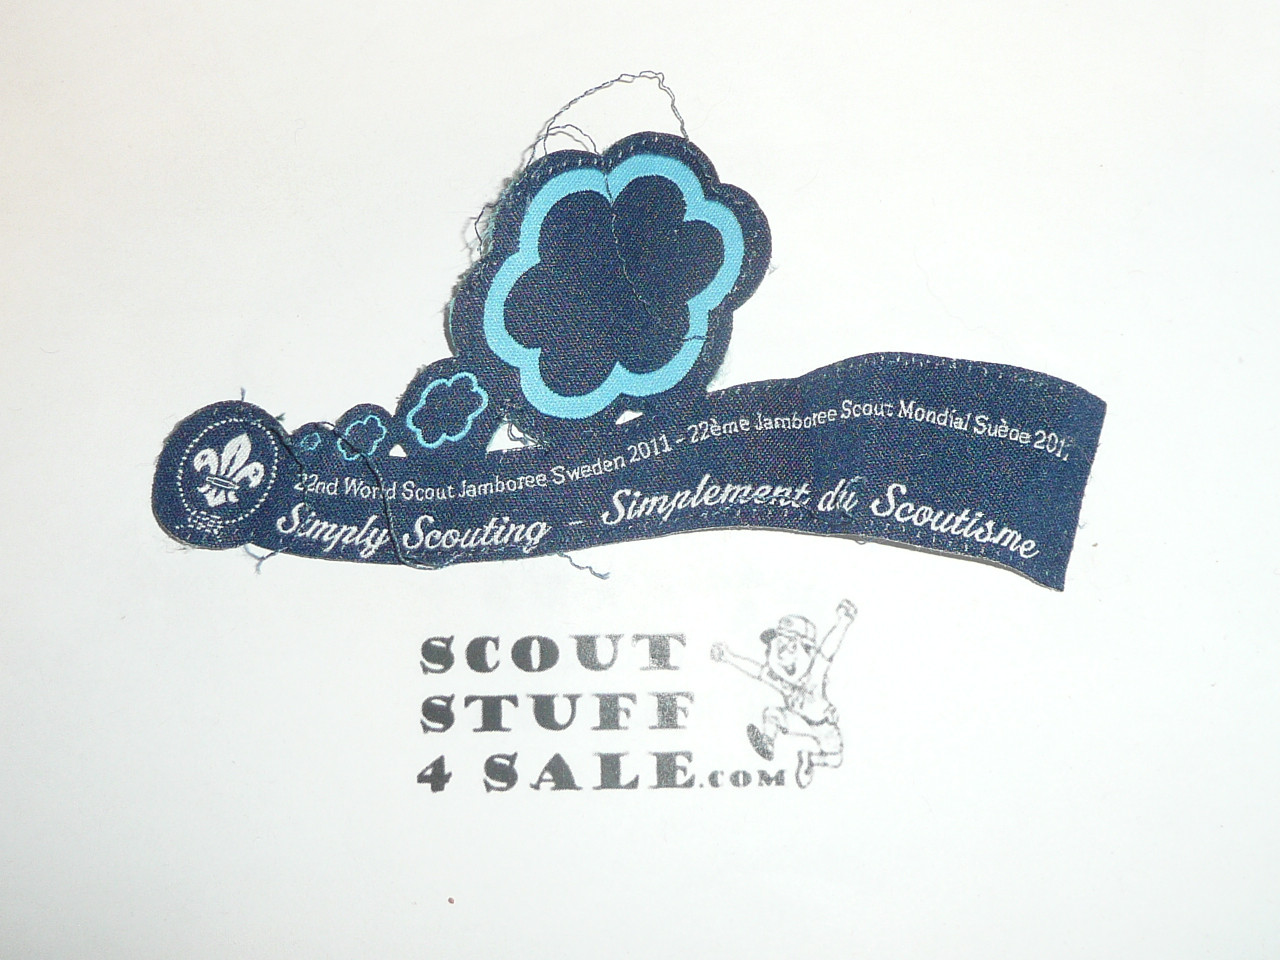 2011 Boy Scout World Official Participant uniform Patch, sewn